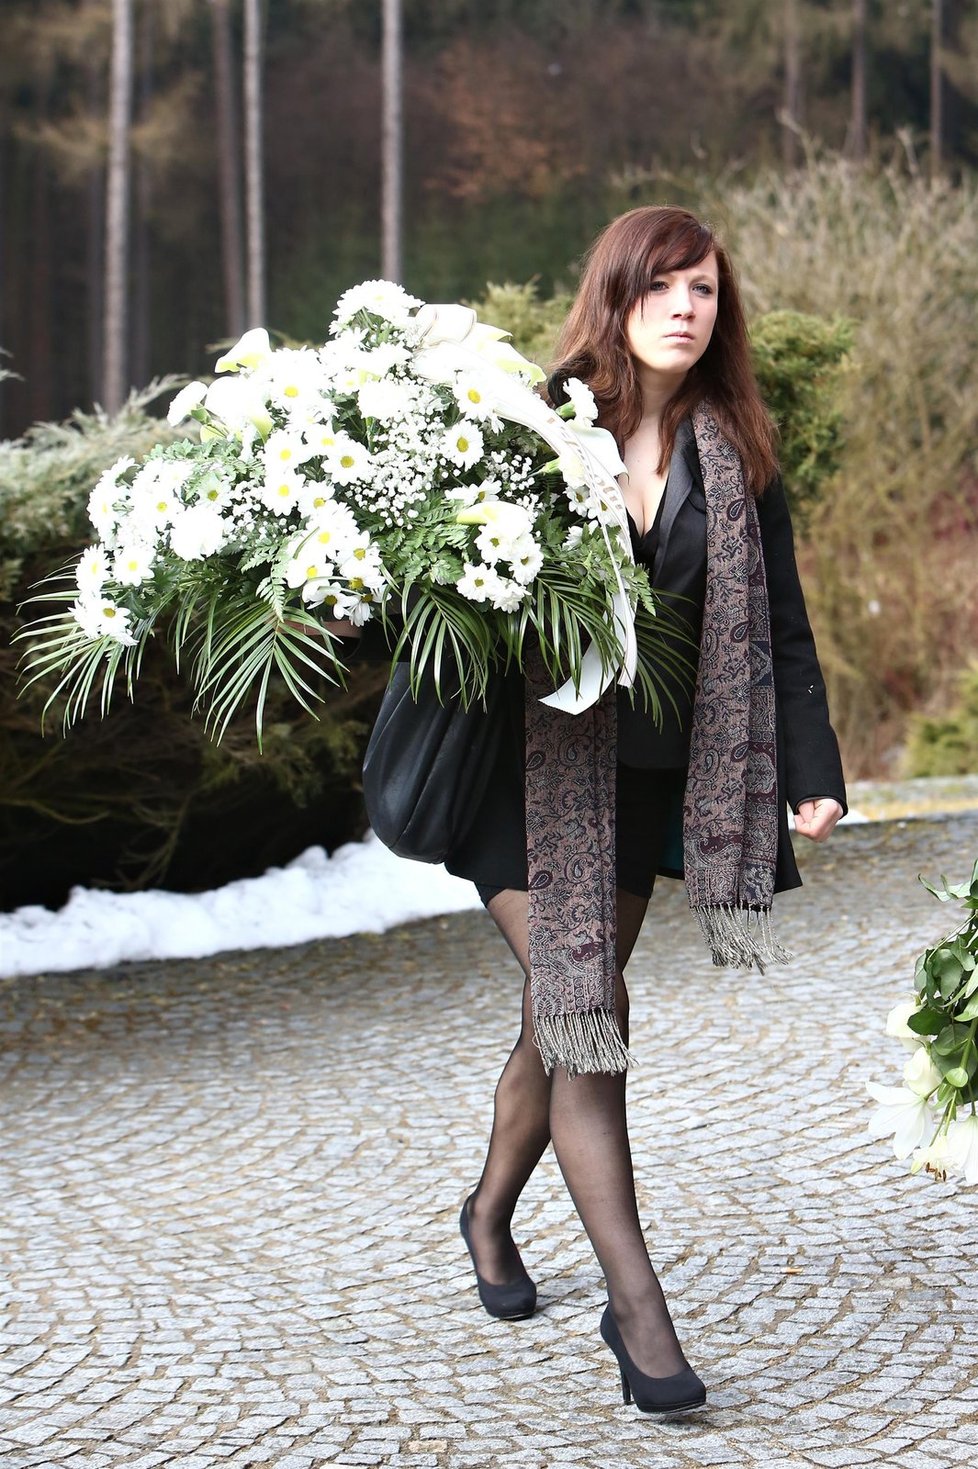 Rodina a kamarádi Petry přinesli na pohřeb řadu bílých květin.